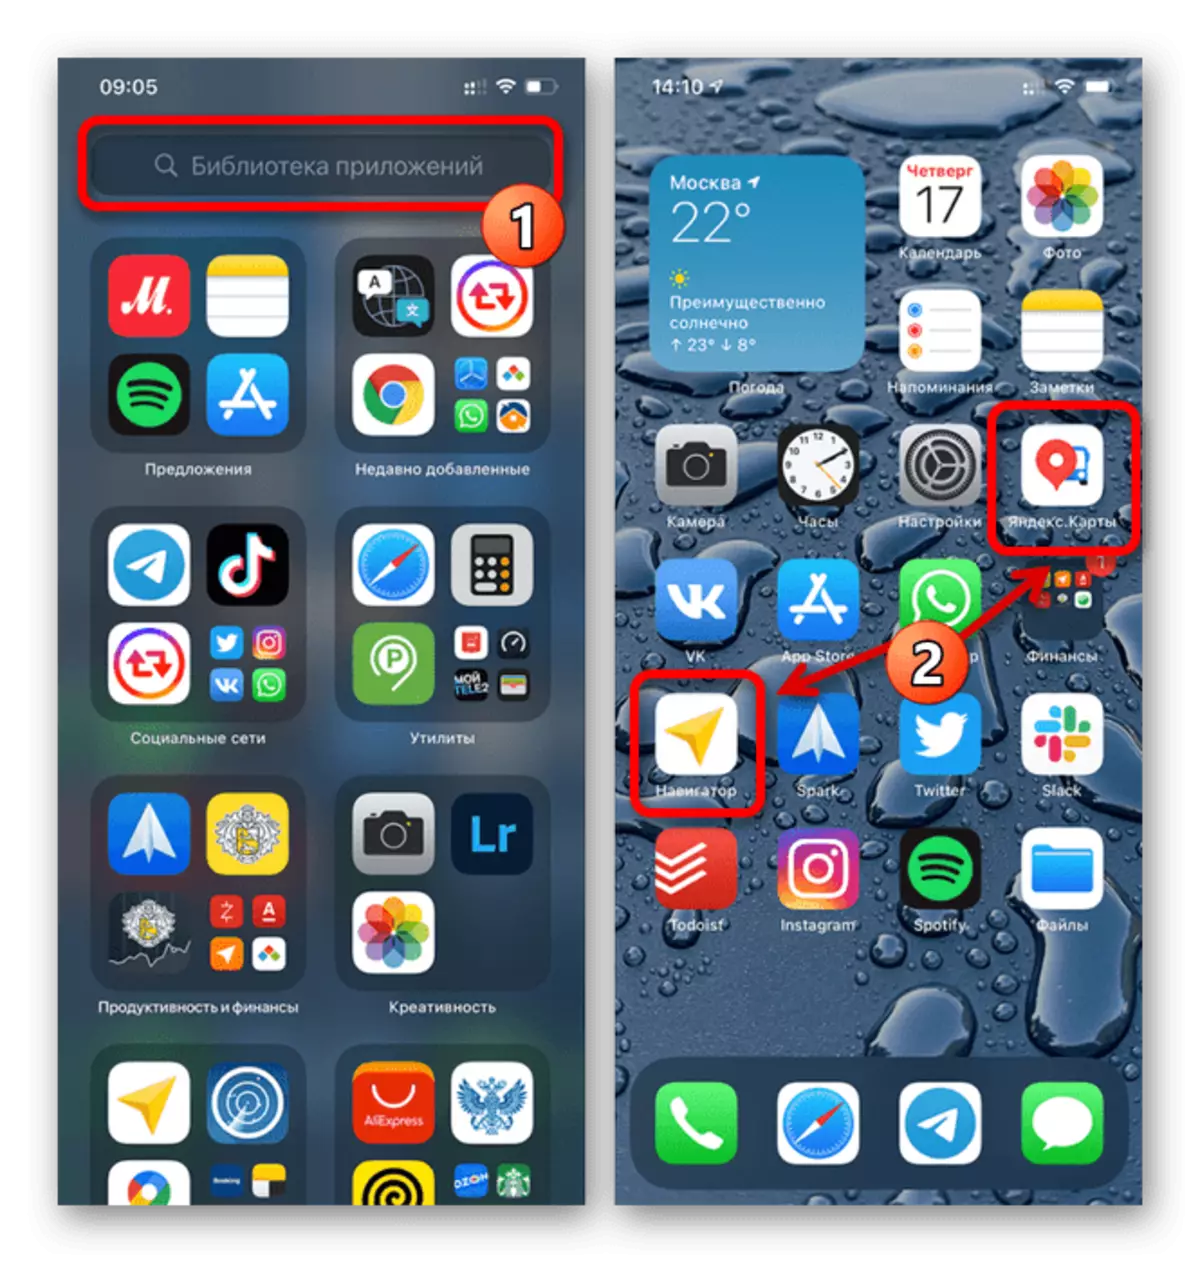 Un exemple d'ajout d'étiquettes Yandex à l'écran d'accueil sur l'iPhone